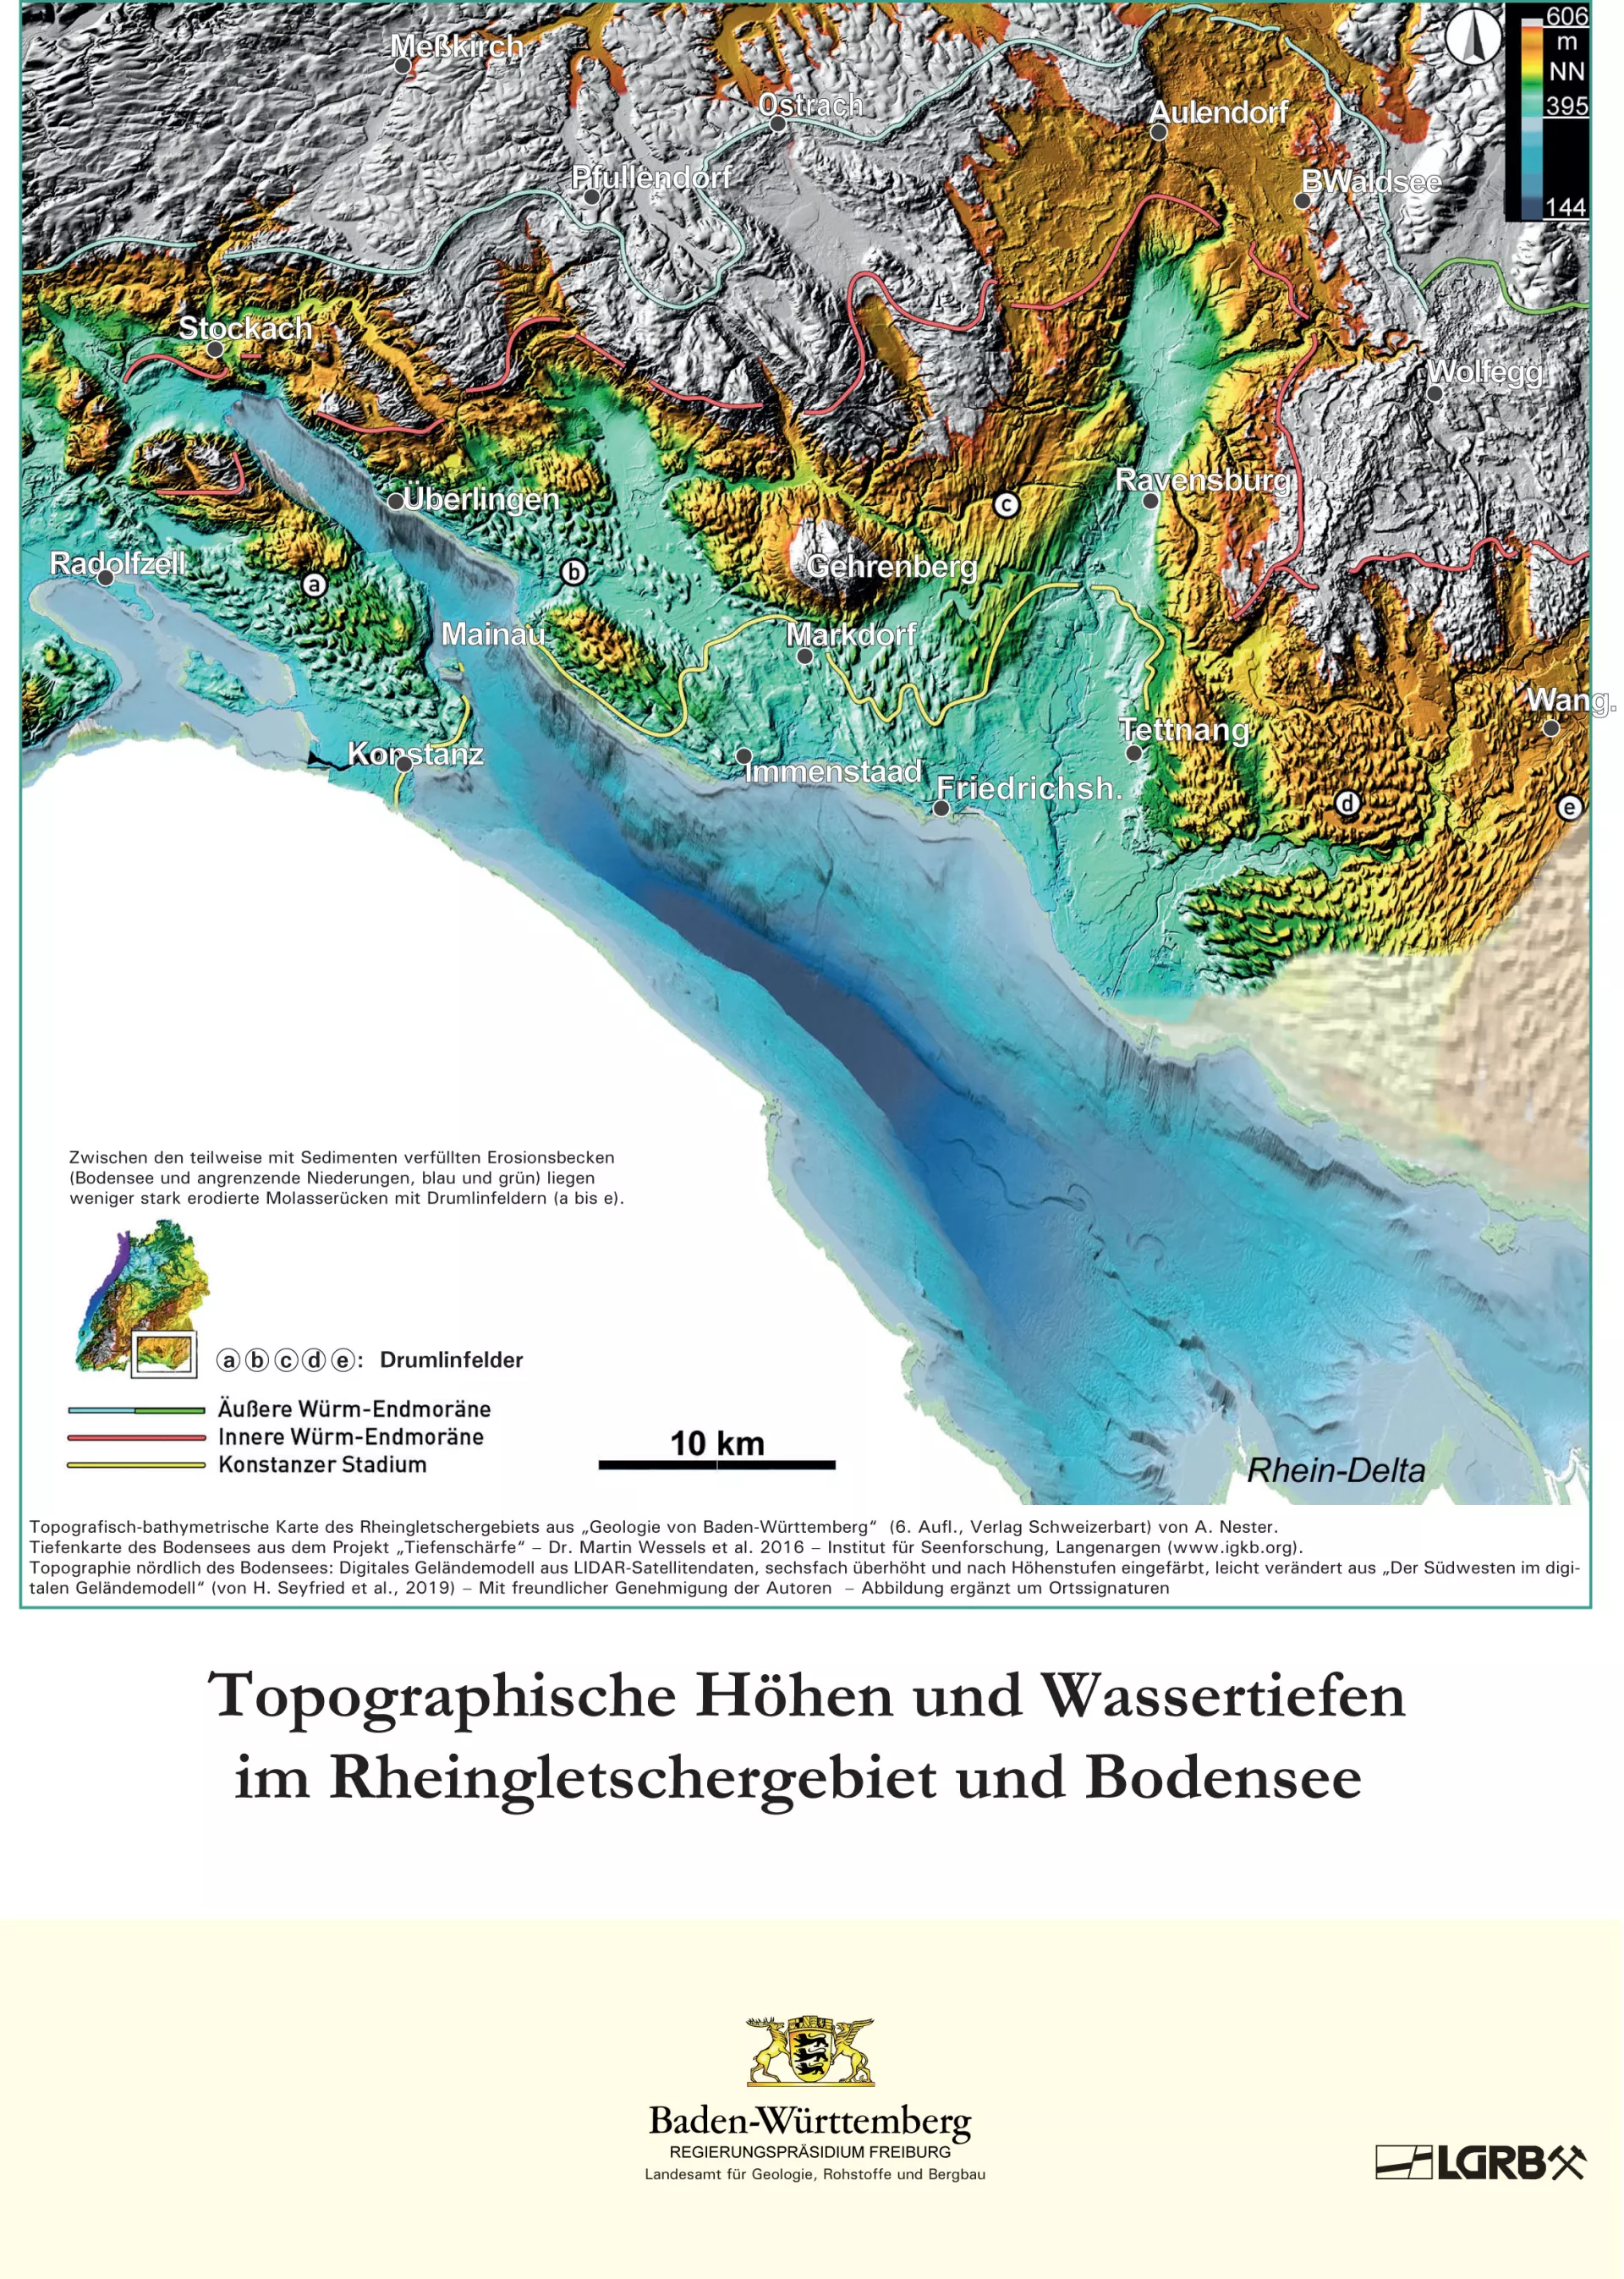 Dargestellt ist das Poster des LGRB zur Gartenschau in Wangen. Eine Karte zeigt farbig die Höhenlagen im Rheingletschergebiet, die Wassertiefen des Bodensees und den Verlauf der Endmoränen.